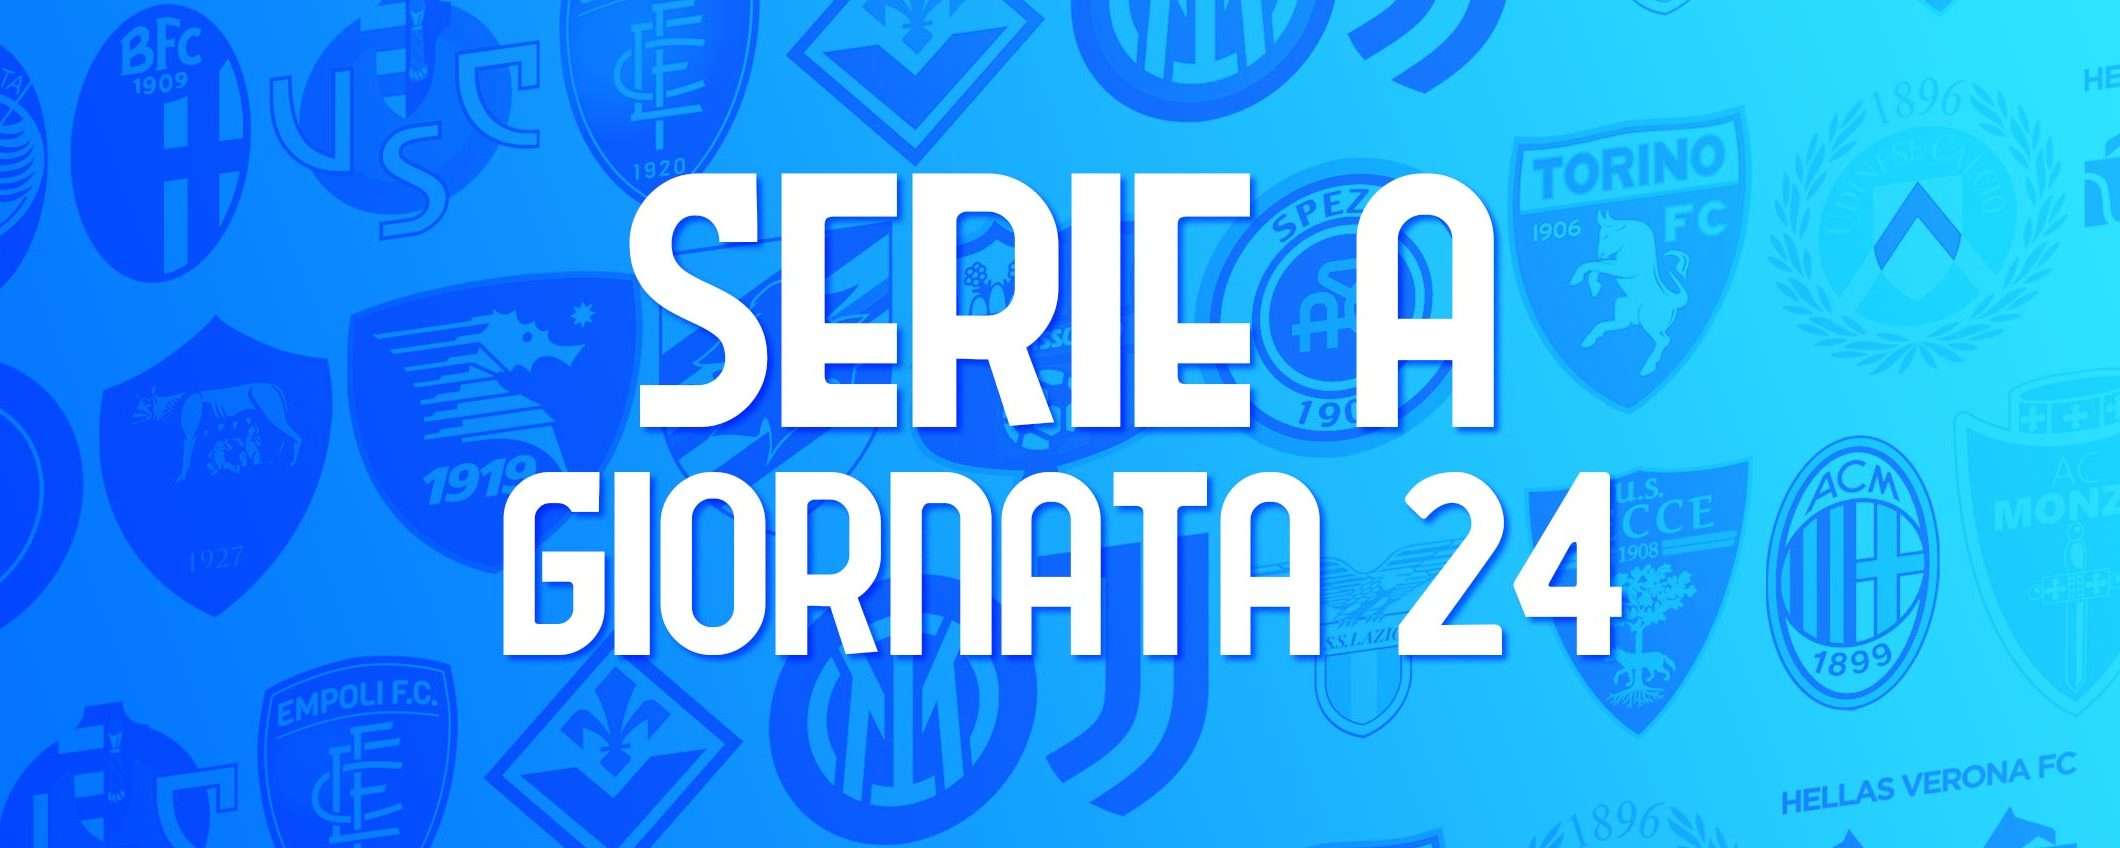 Serie A, giornata 24: le partite (orari e streaming)